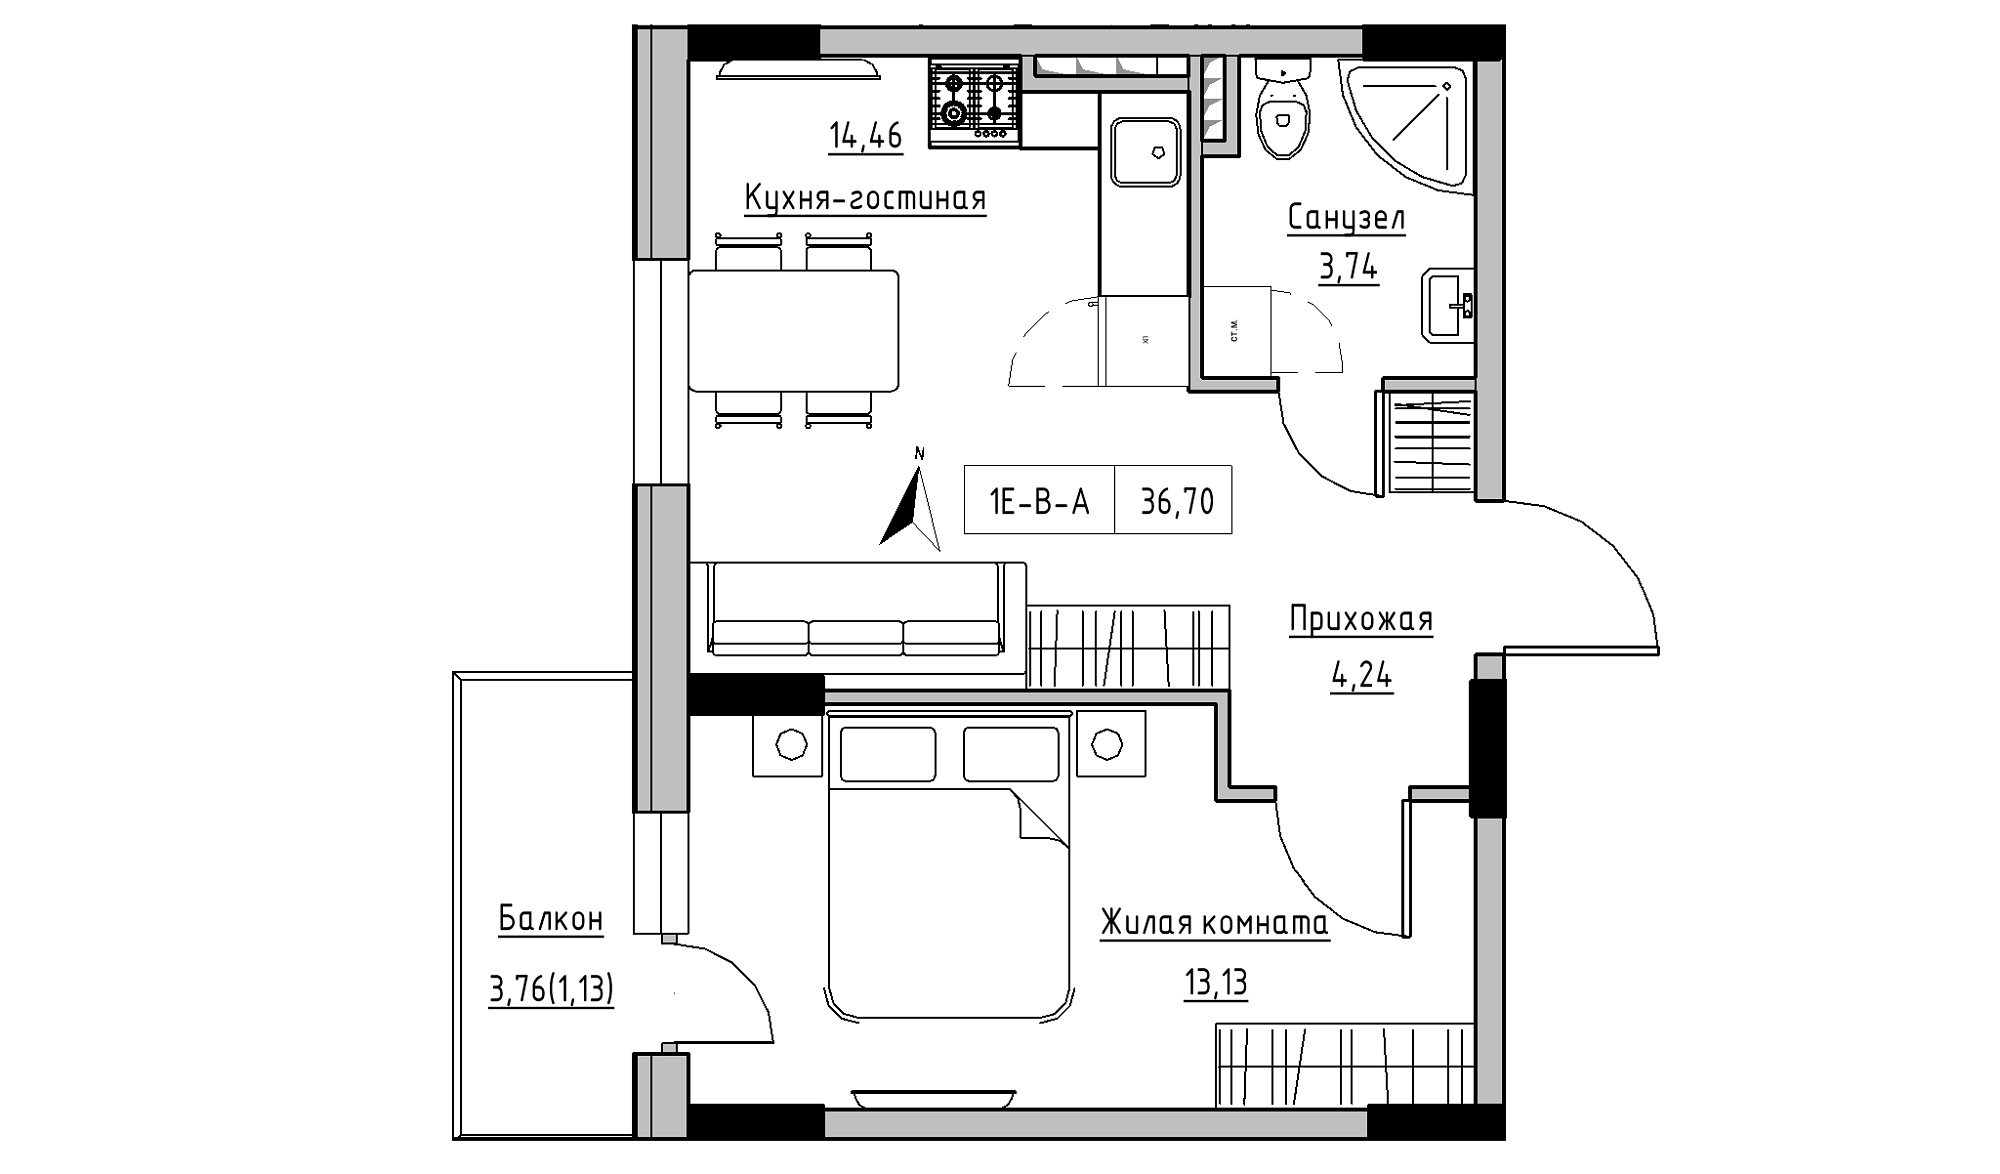 Планировка 1-к квартира площей 36.7м2, KS-025-03/0004.